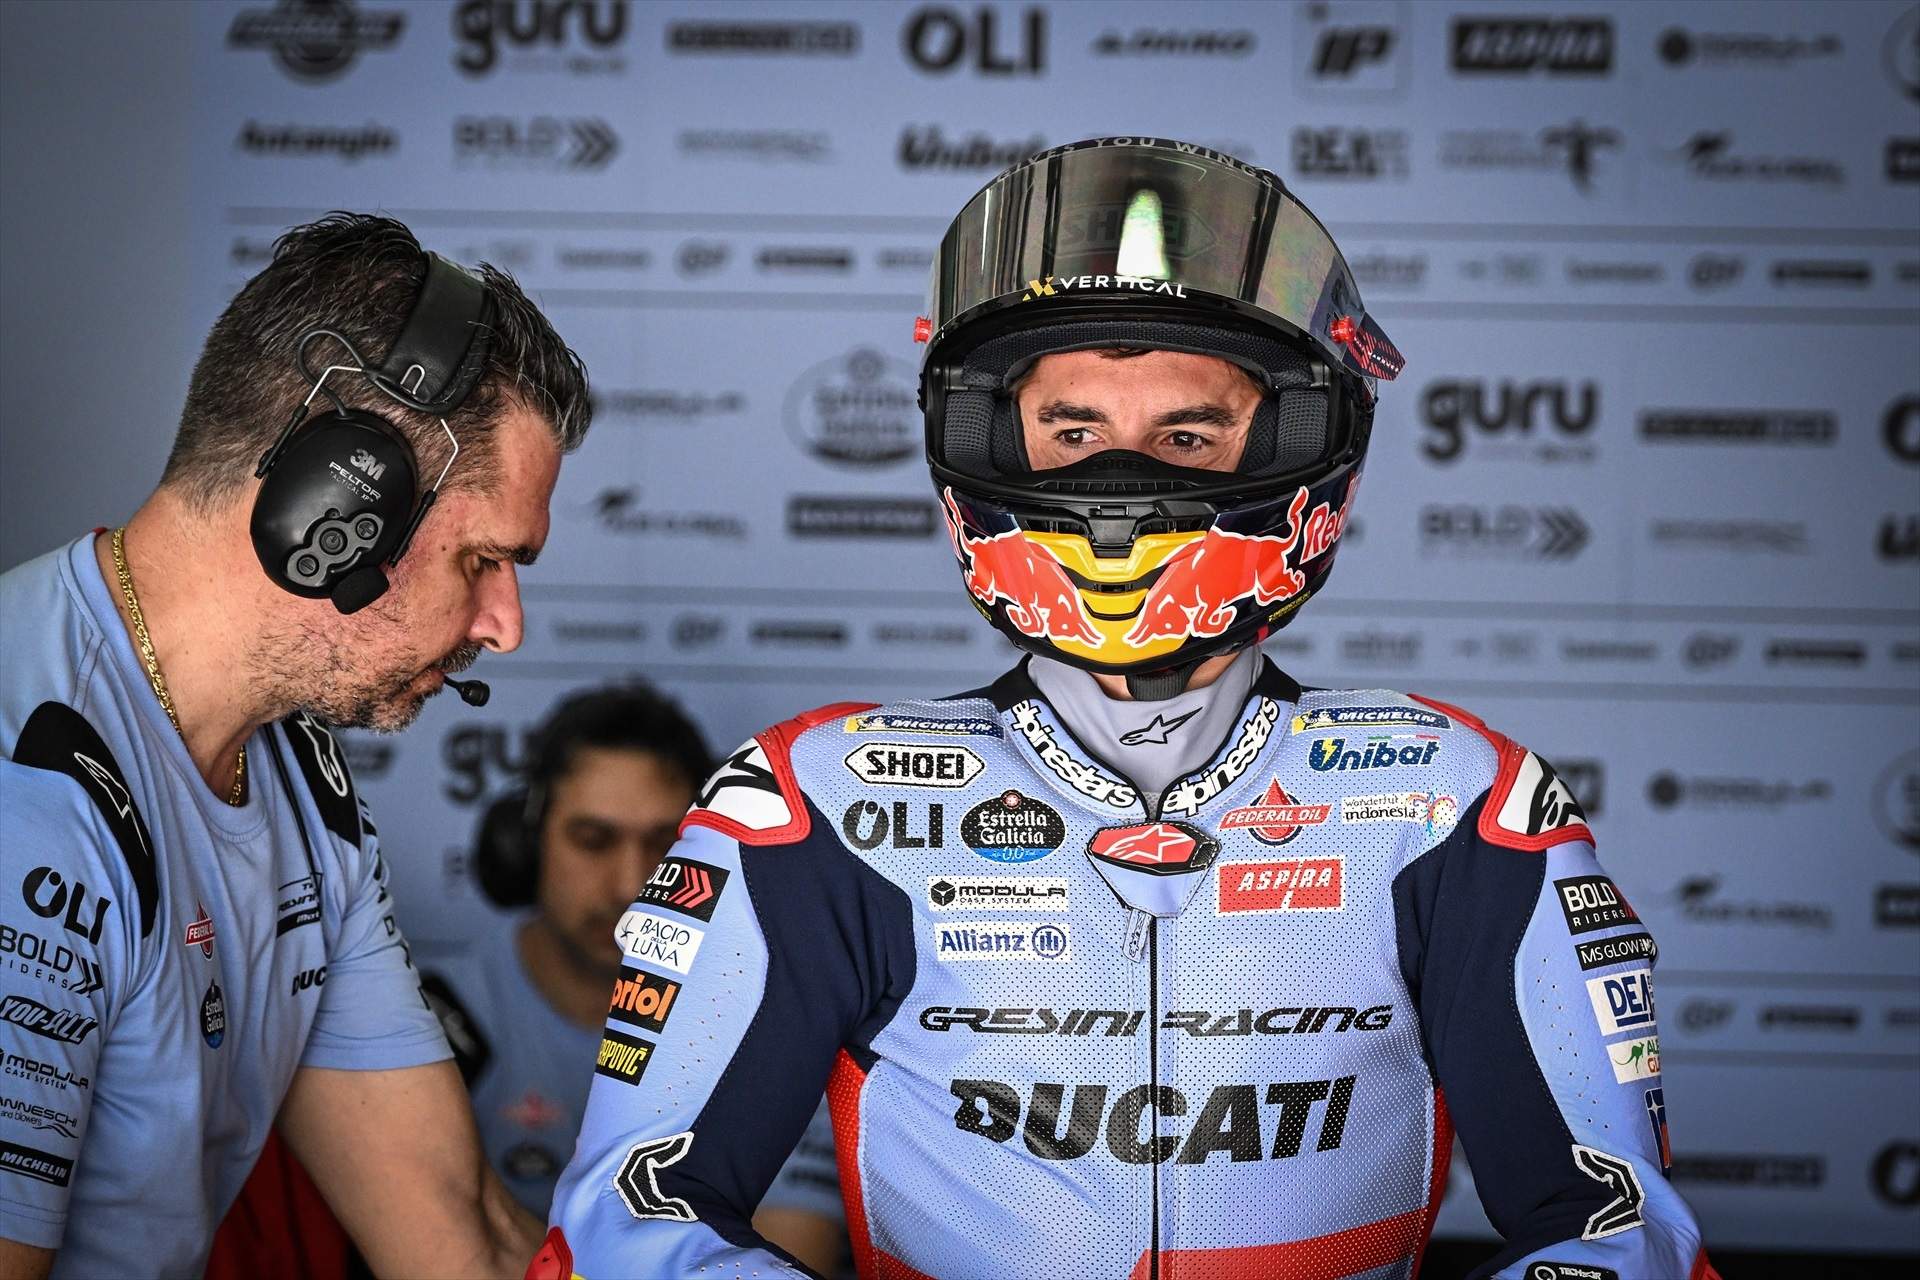 A Marc Márquez li han posat sobrenom, Ducati el vol fer fora, Bagnaia pressiona, però no és l'únic